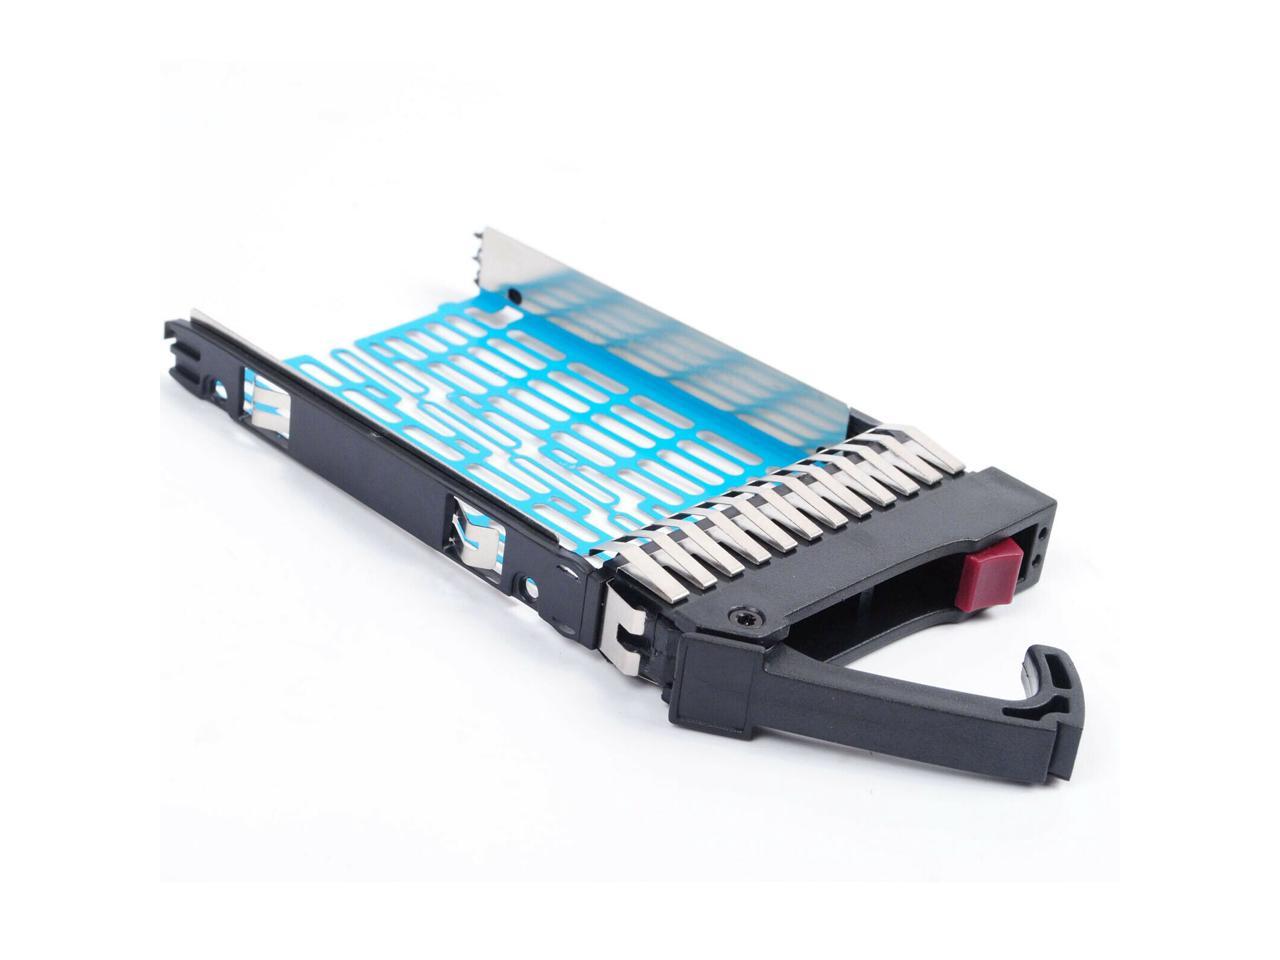 2.5 SAS SATA Hard Drive Tray Caddy for HP Compaq Proliant DL380 G4 DL380 G5 DL385 G2 